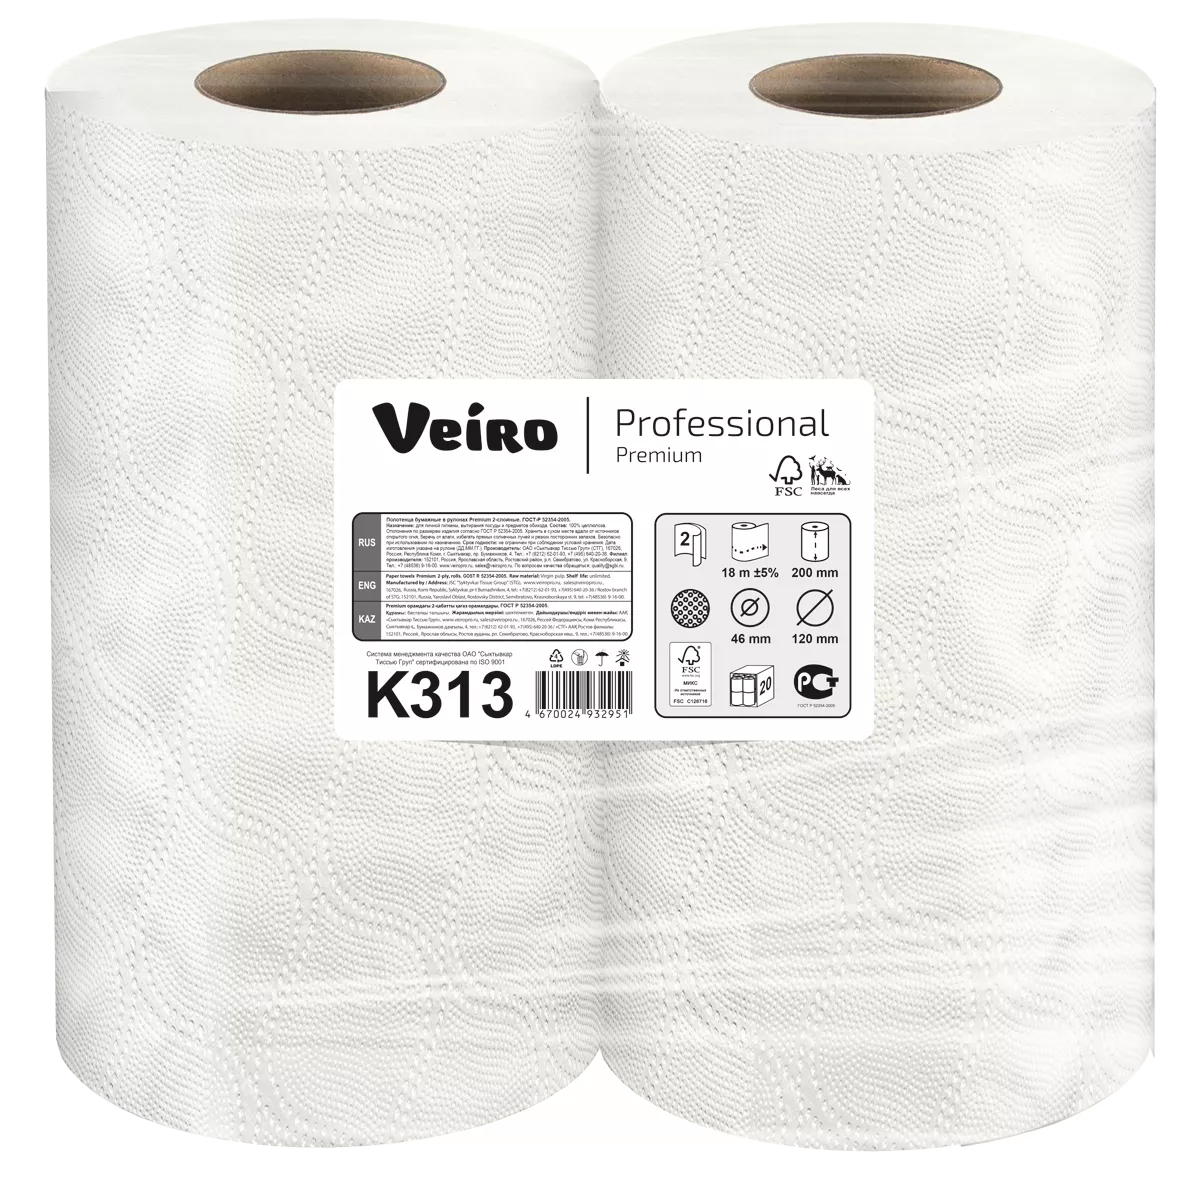 T me premium cc. Veiro professional Premium k313. Туалетная бумага Veiro professional Premium t309,. Полотенца бумажные Veiro professional. Veiro professional t11200.